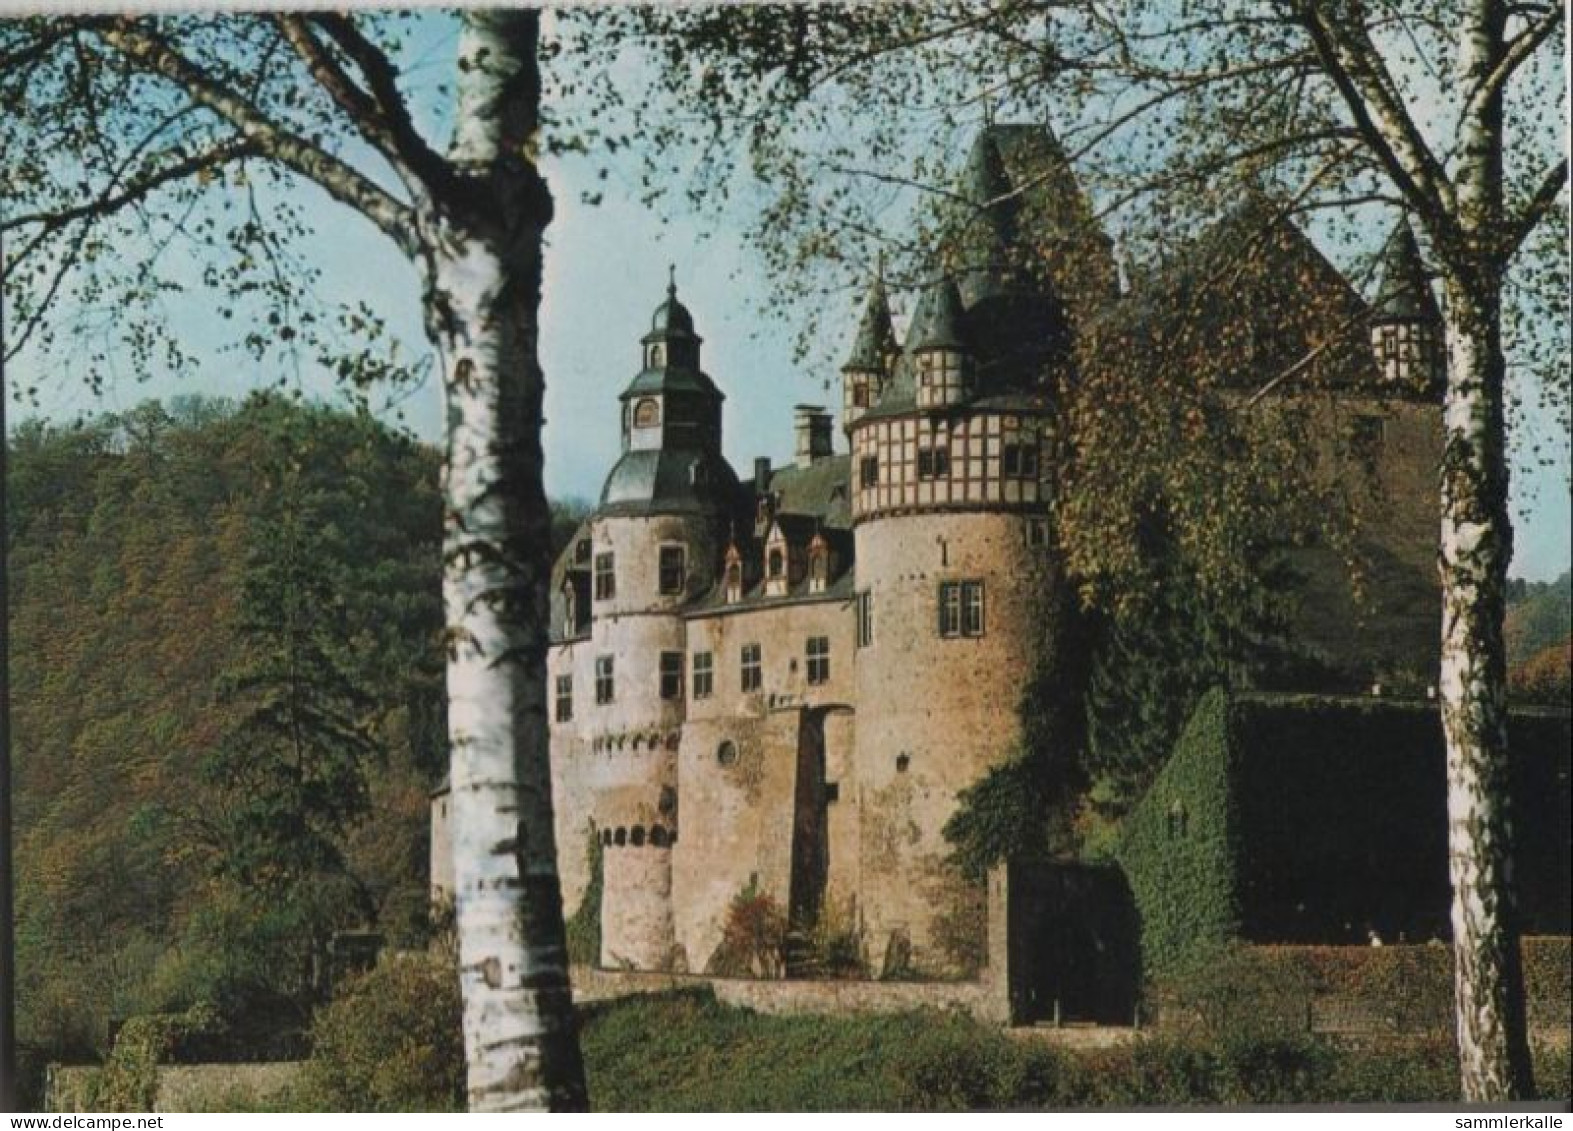 44680 - St. Johann, Schloss Bürresheim - Ca. 1980 - Mayen